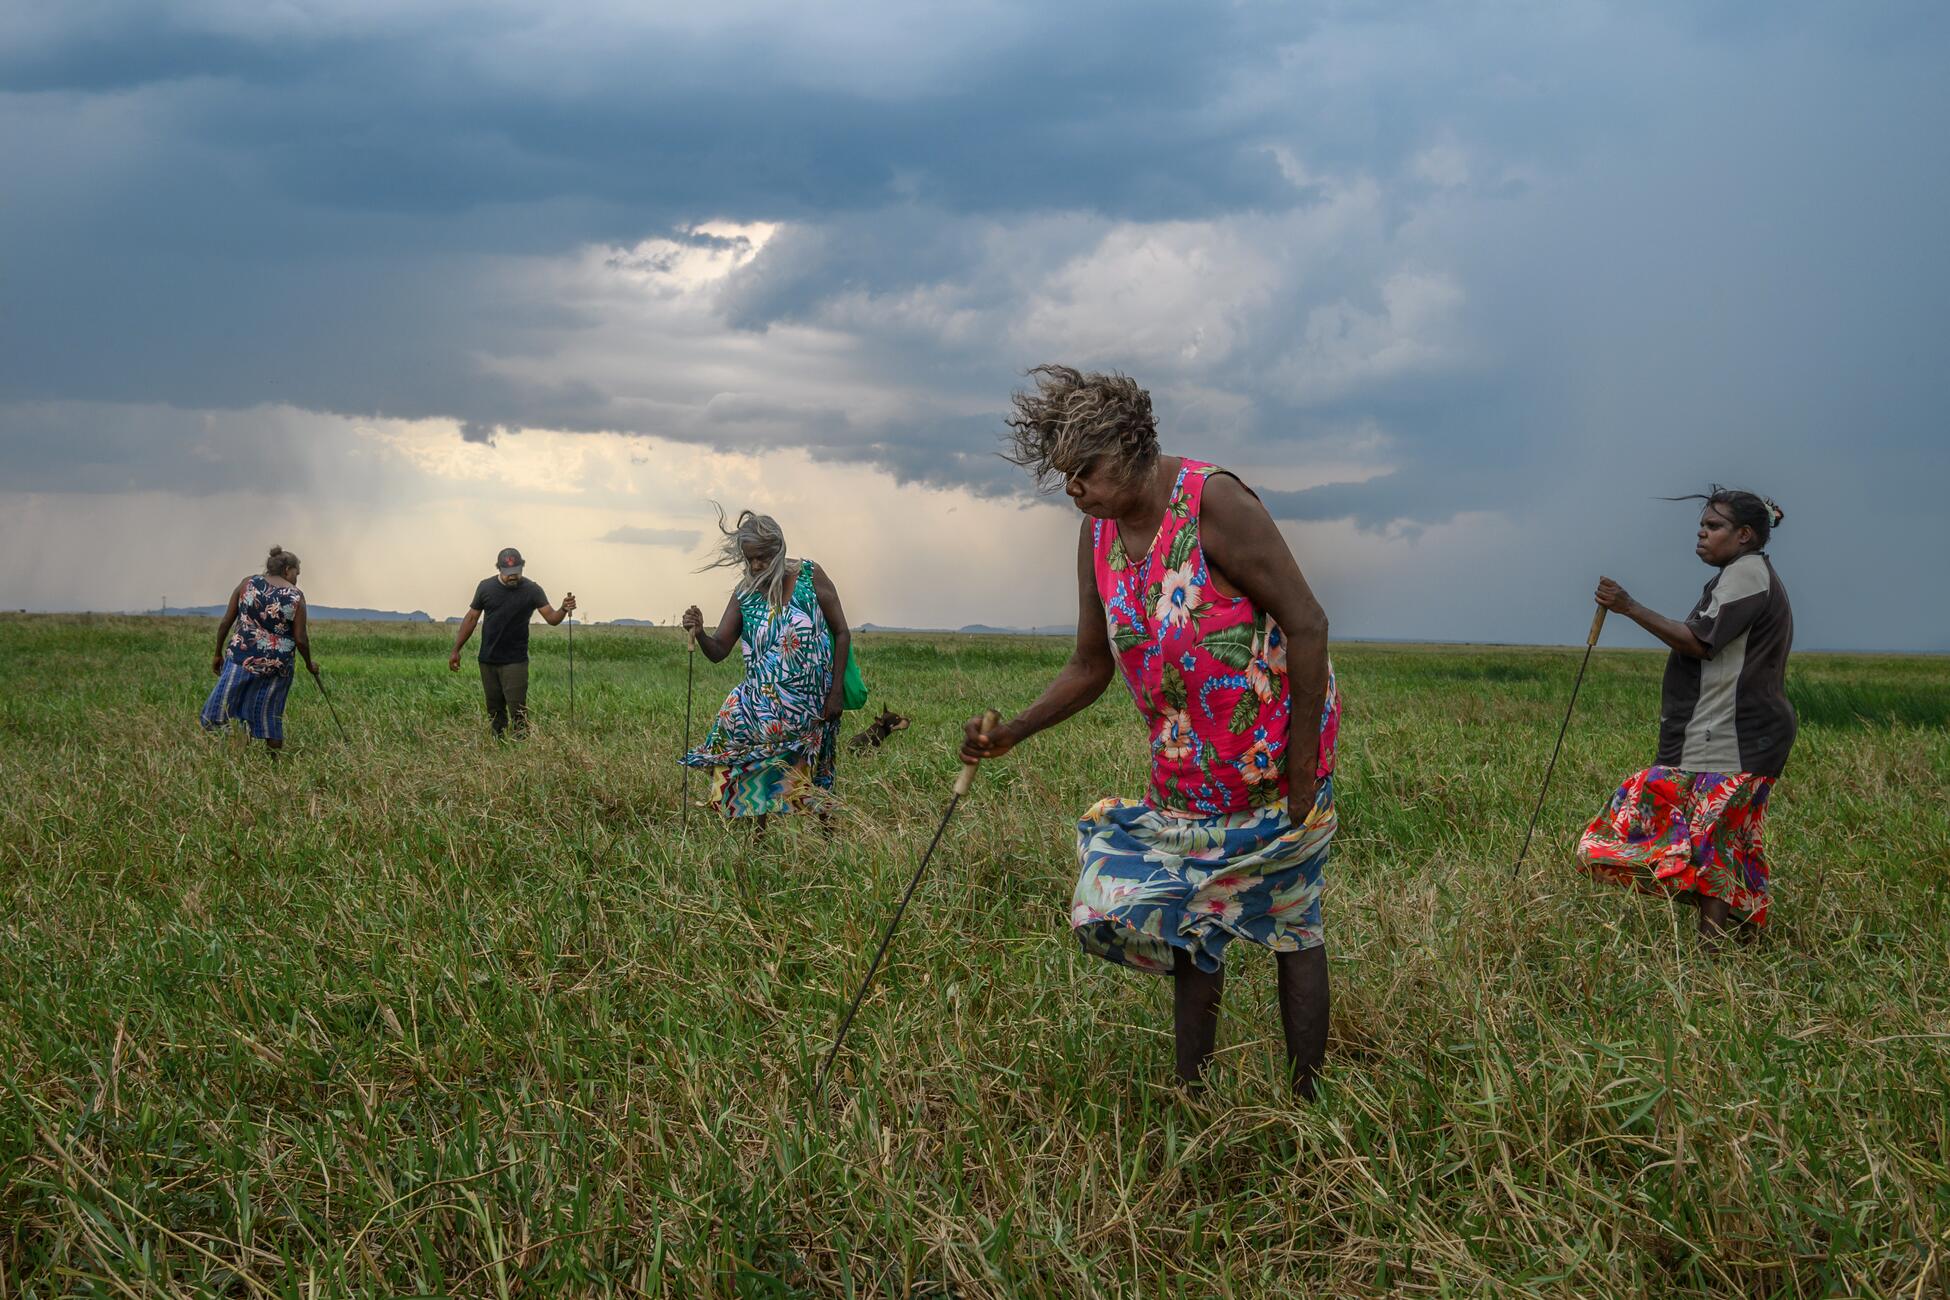 Фотография пяти человек на высоком травянистом поле с длинными металлическими палками в руках, другие концы которых в траве, в то время как ветер развевает их одежду и волосы